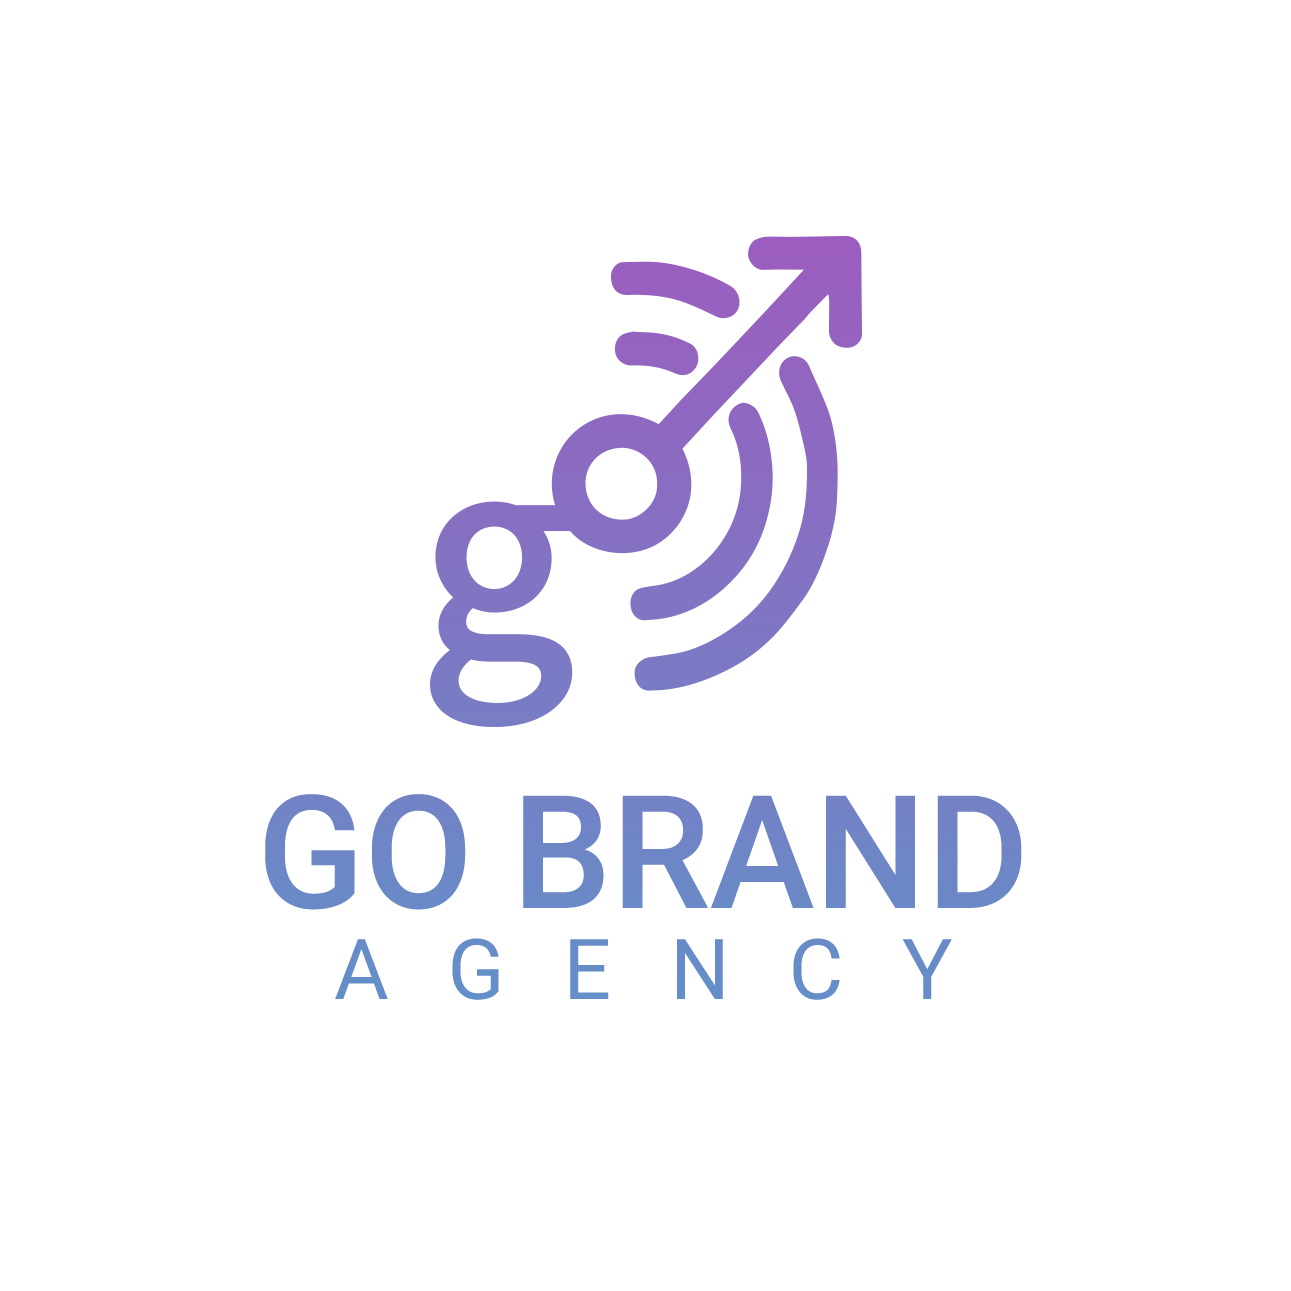 Go brand agency